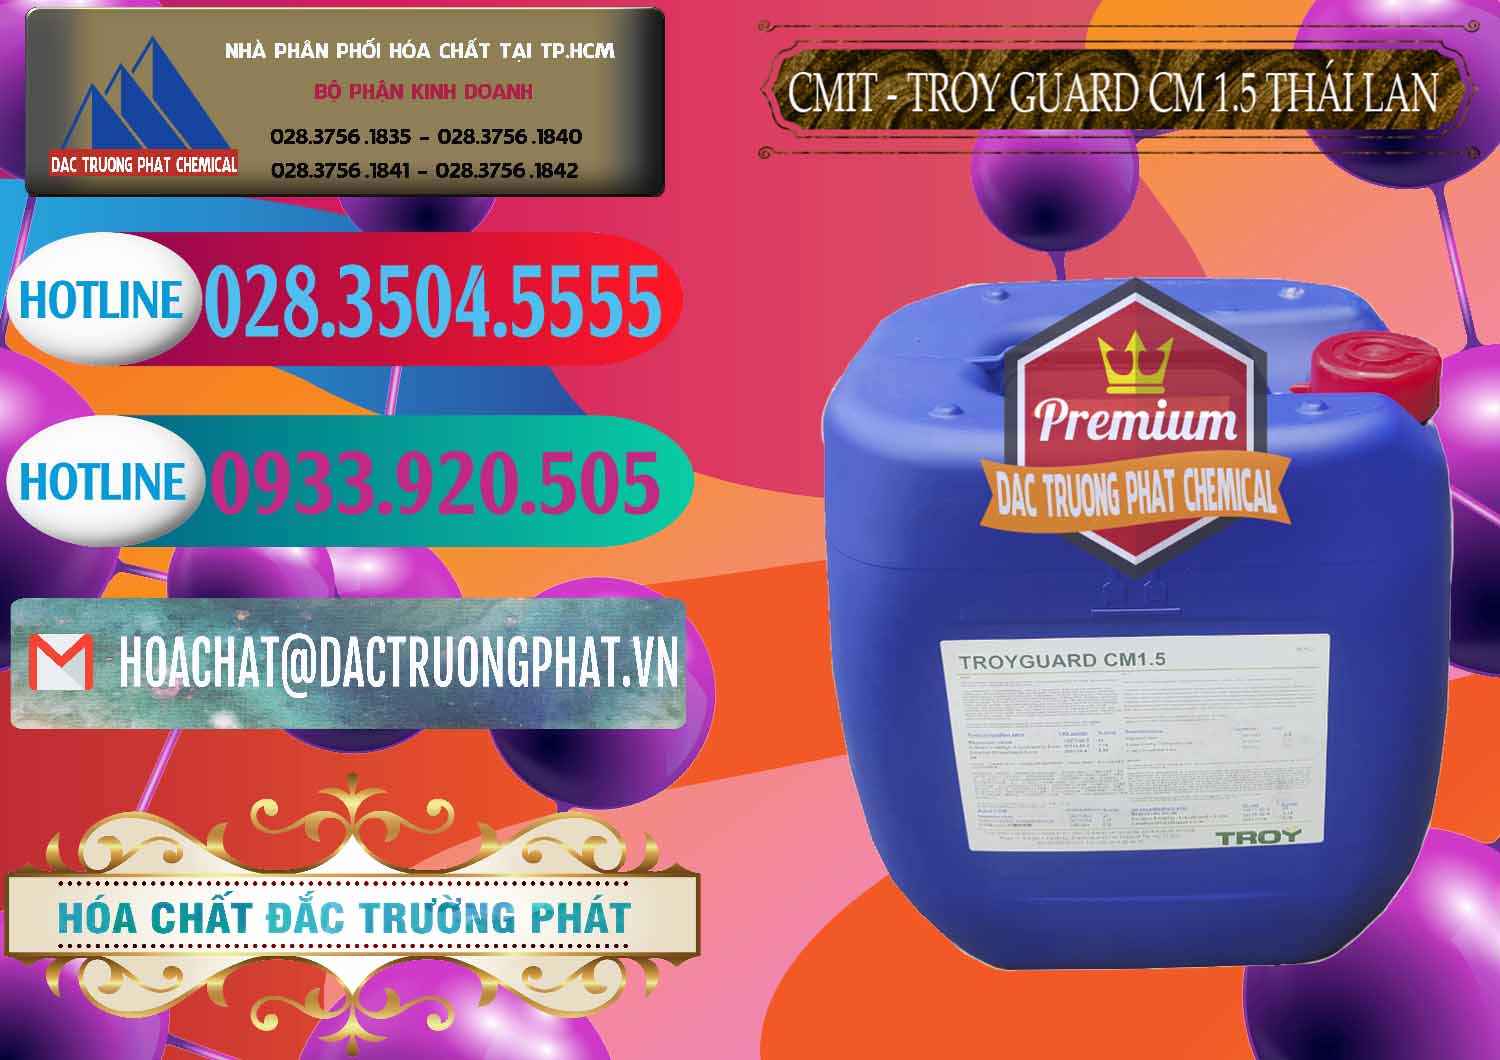 Cty chuyên phân phối & bán Chất Bảo Quản CMIT Thái Lan Thailand - 0326 - Nơi chuyên bán và cung cấp hóa chất tại TP.HCM - truongphat.vn